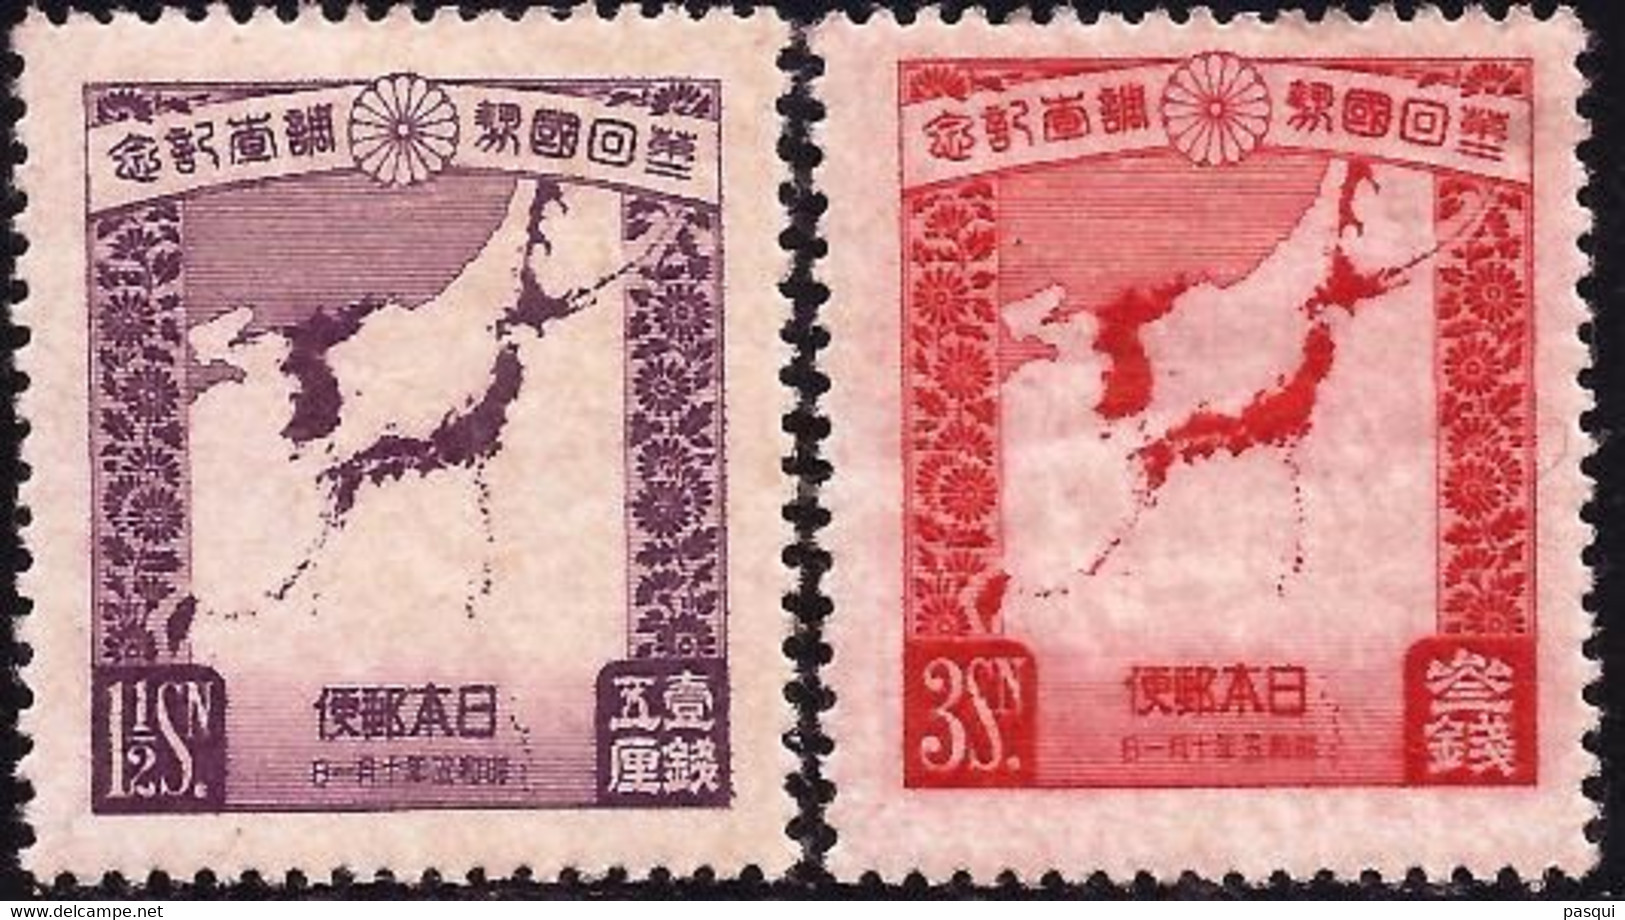 JAPON - Fx. 2909a - Yv. 213/4 - 2º Censo - Mapa Con Corea Y Manchucuo - 1930 - * - Nuevos